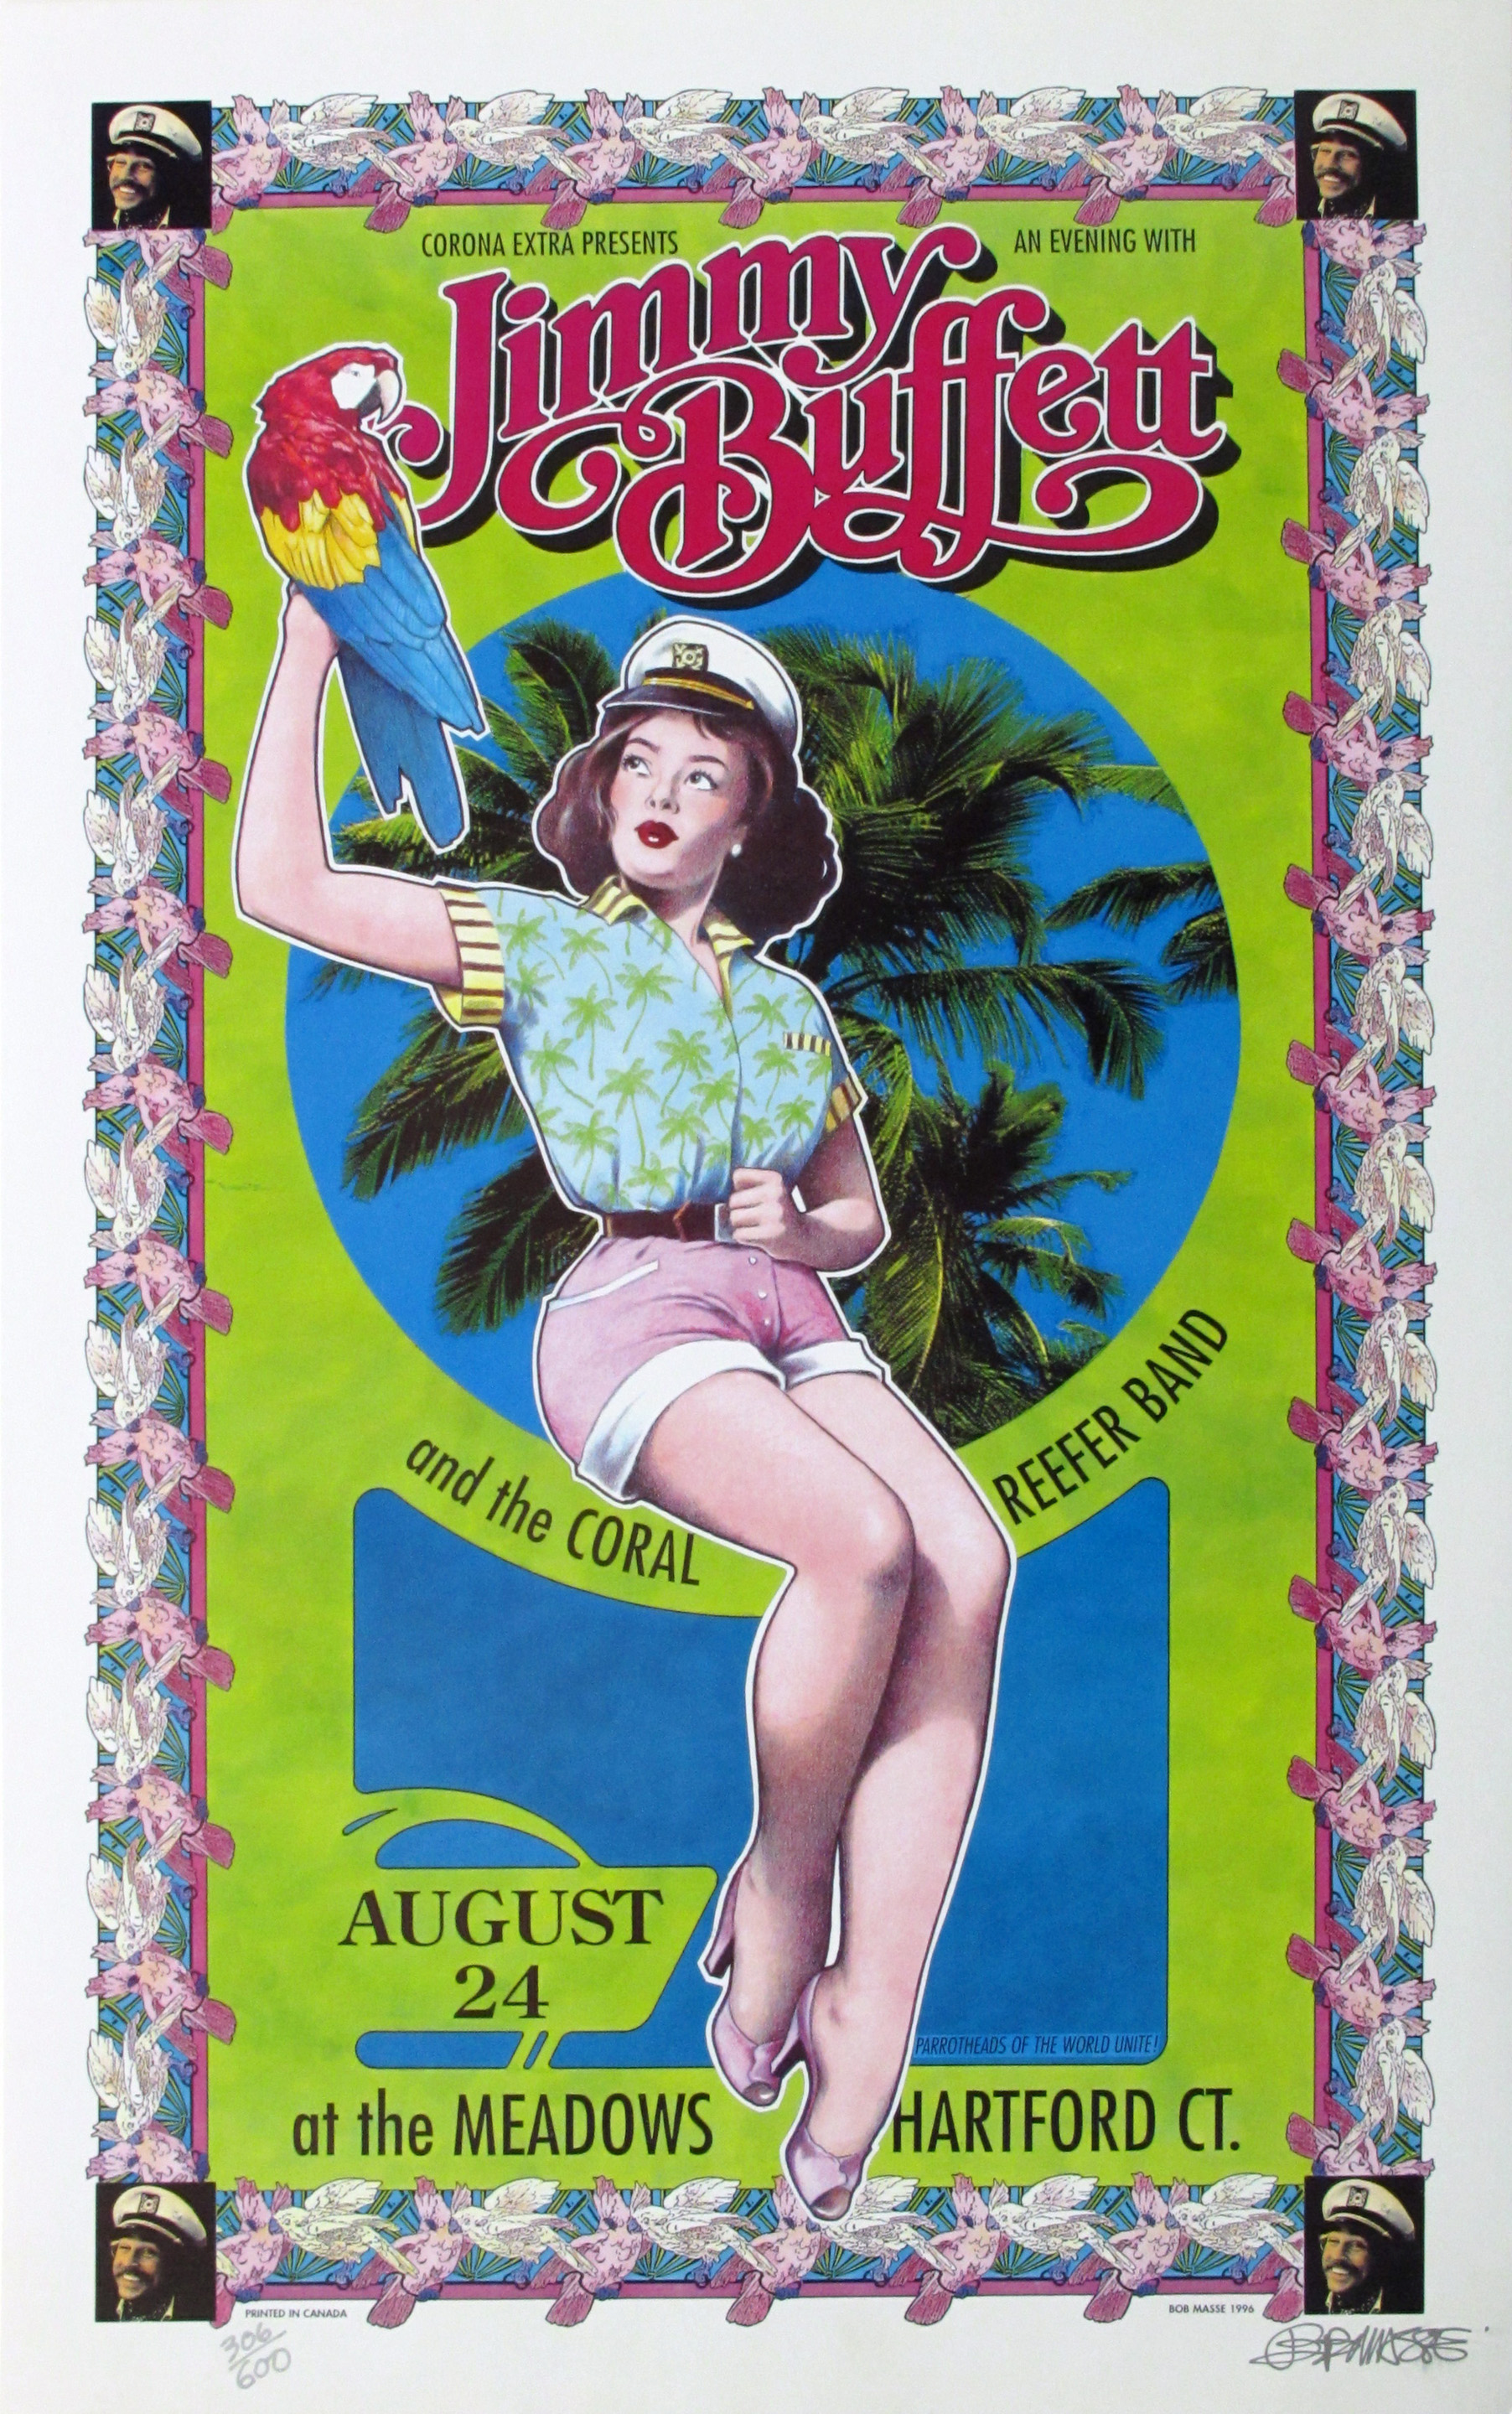 jimmy buffett tour dates 1982